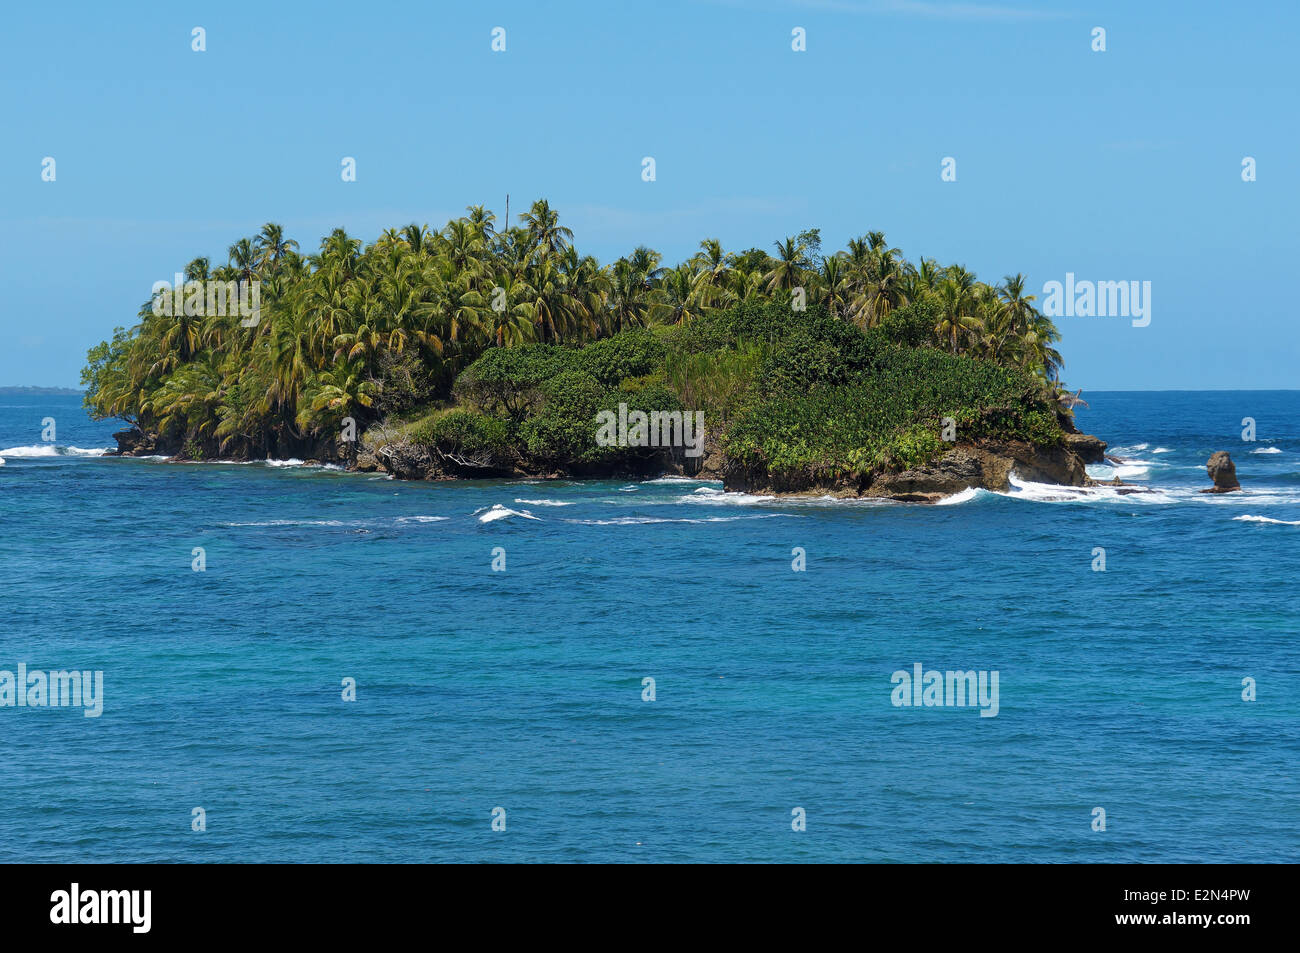 Île tropicale intacte avec une végétation luxuriante dans la mer des Caraïbes, l'archipel de Bocas del Toro, PANAMA Banque D'Images